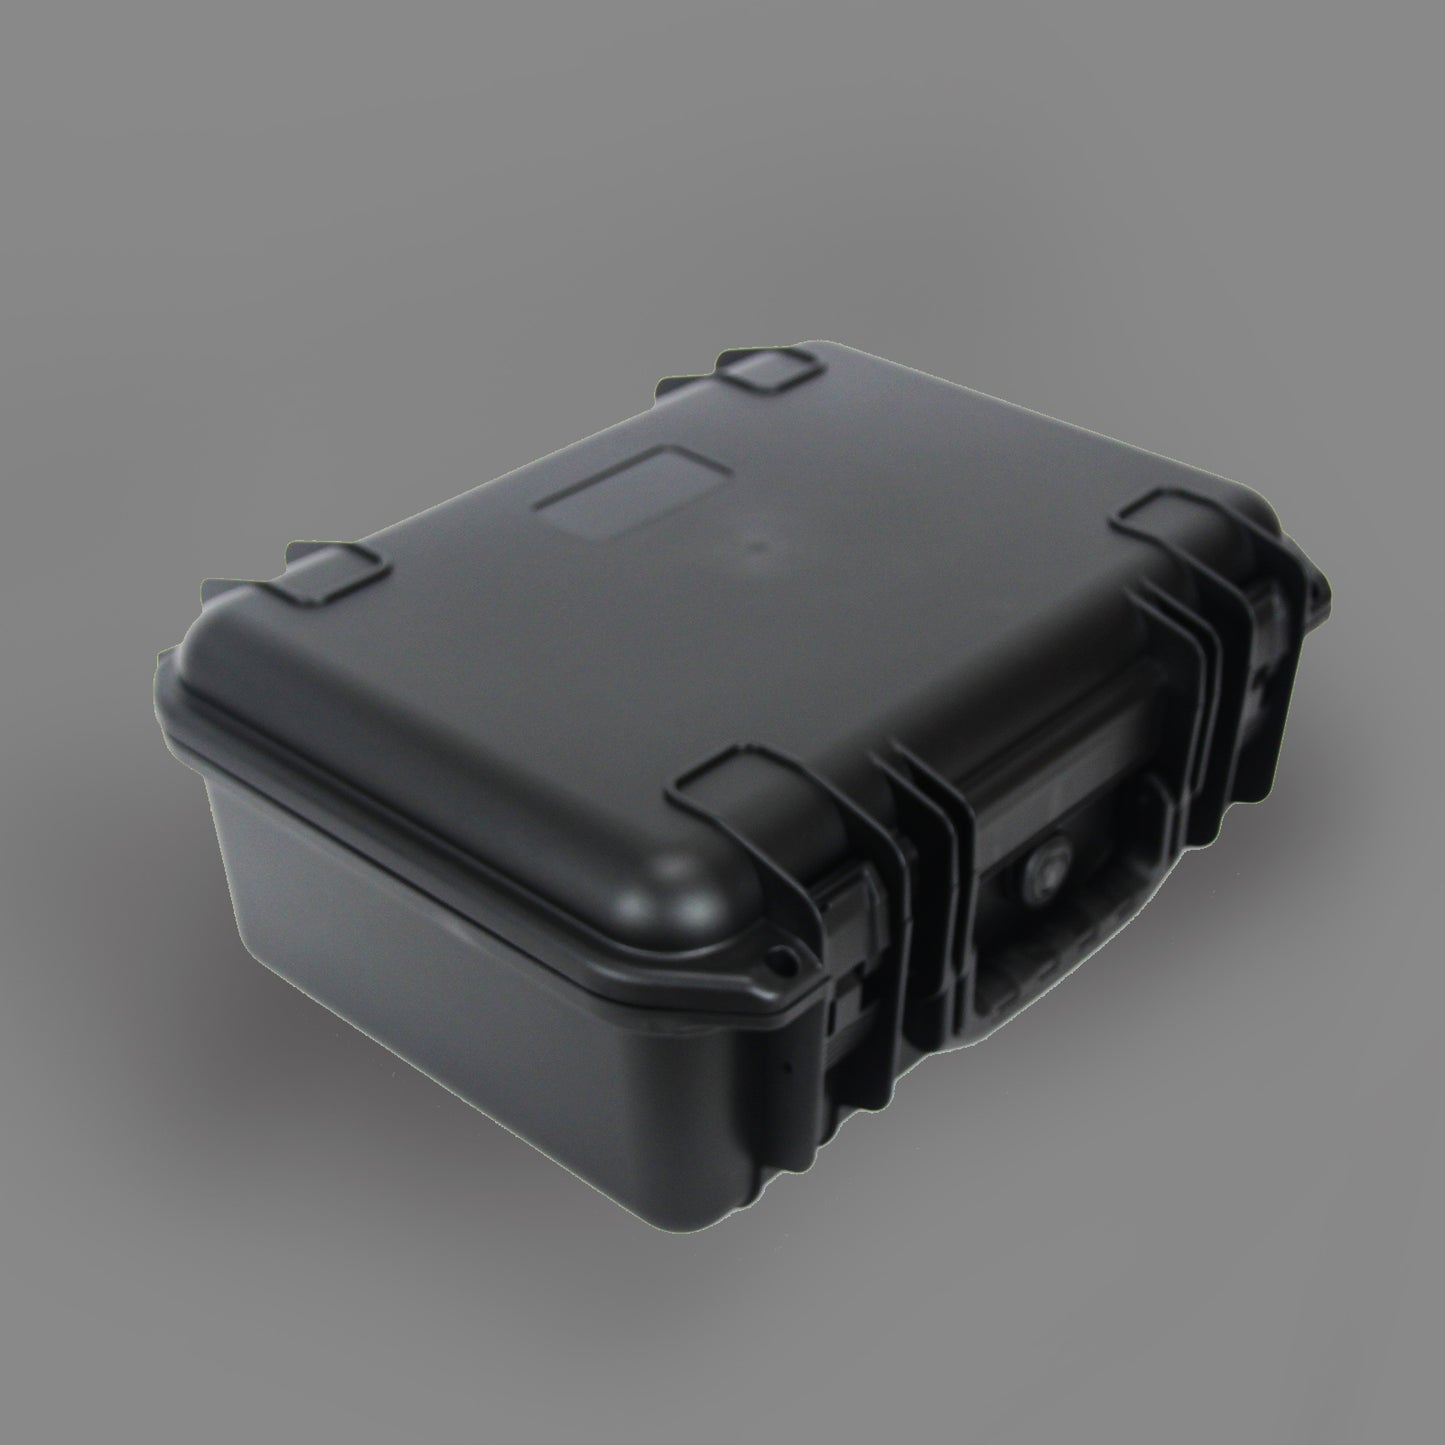 Engineer PP Gun Waterproof Weapon Carrying Bag EVA Case Tool Case